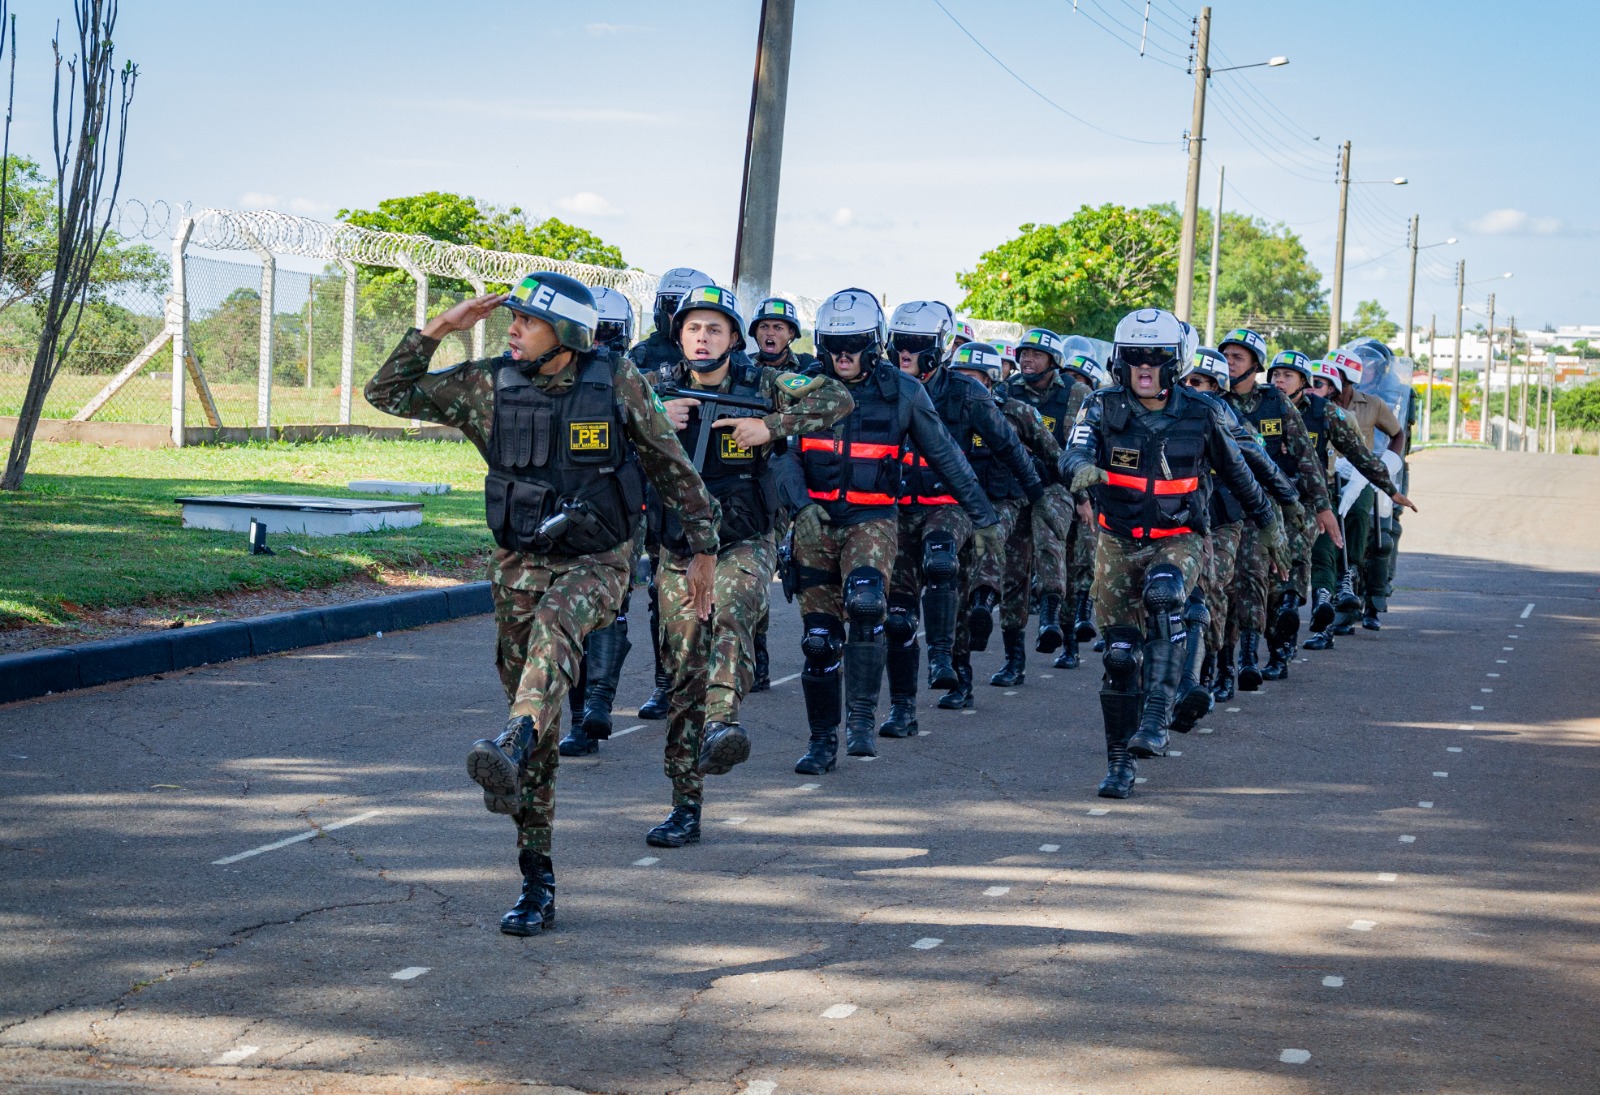 Exército Brasileiro added a new photo. - Exército Brasileiro